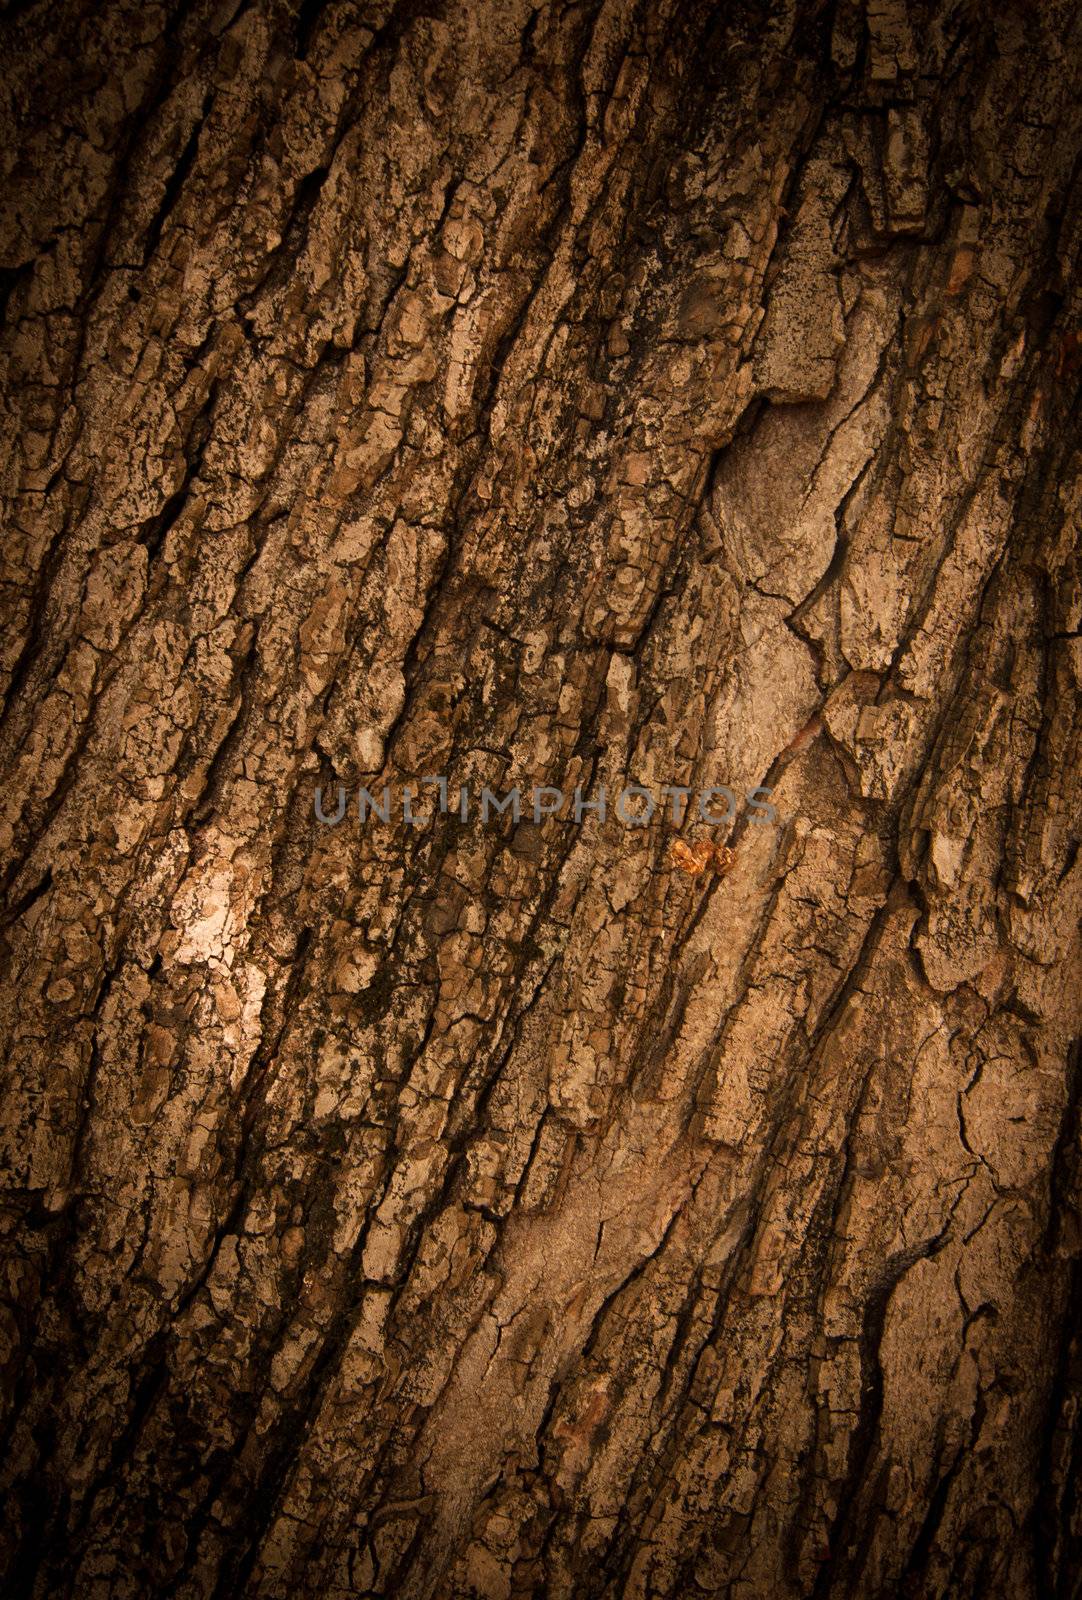 Bark of Oak Tree by nvelichko